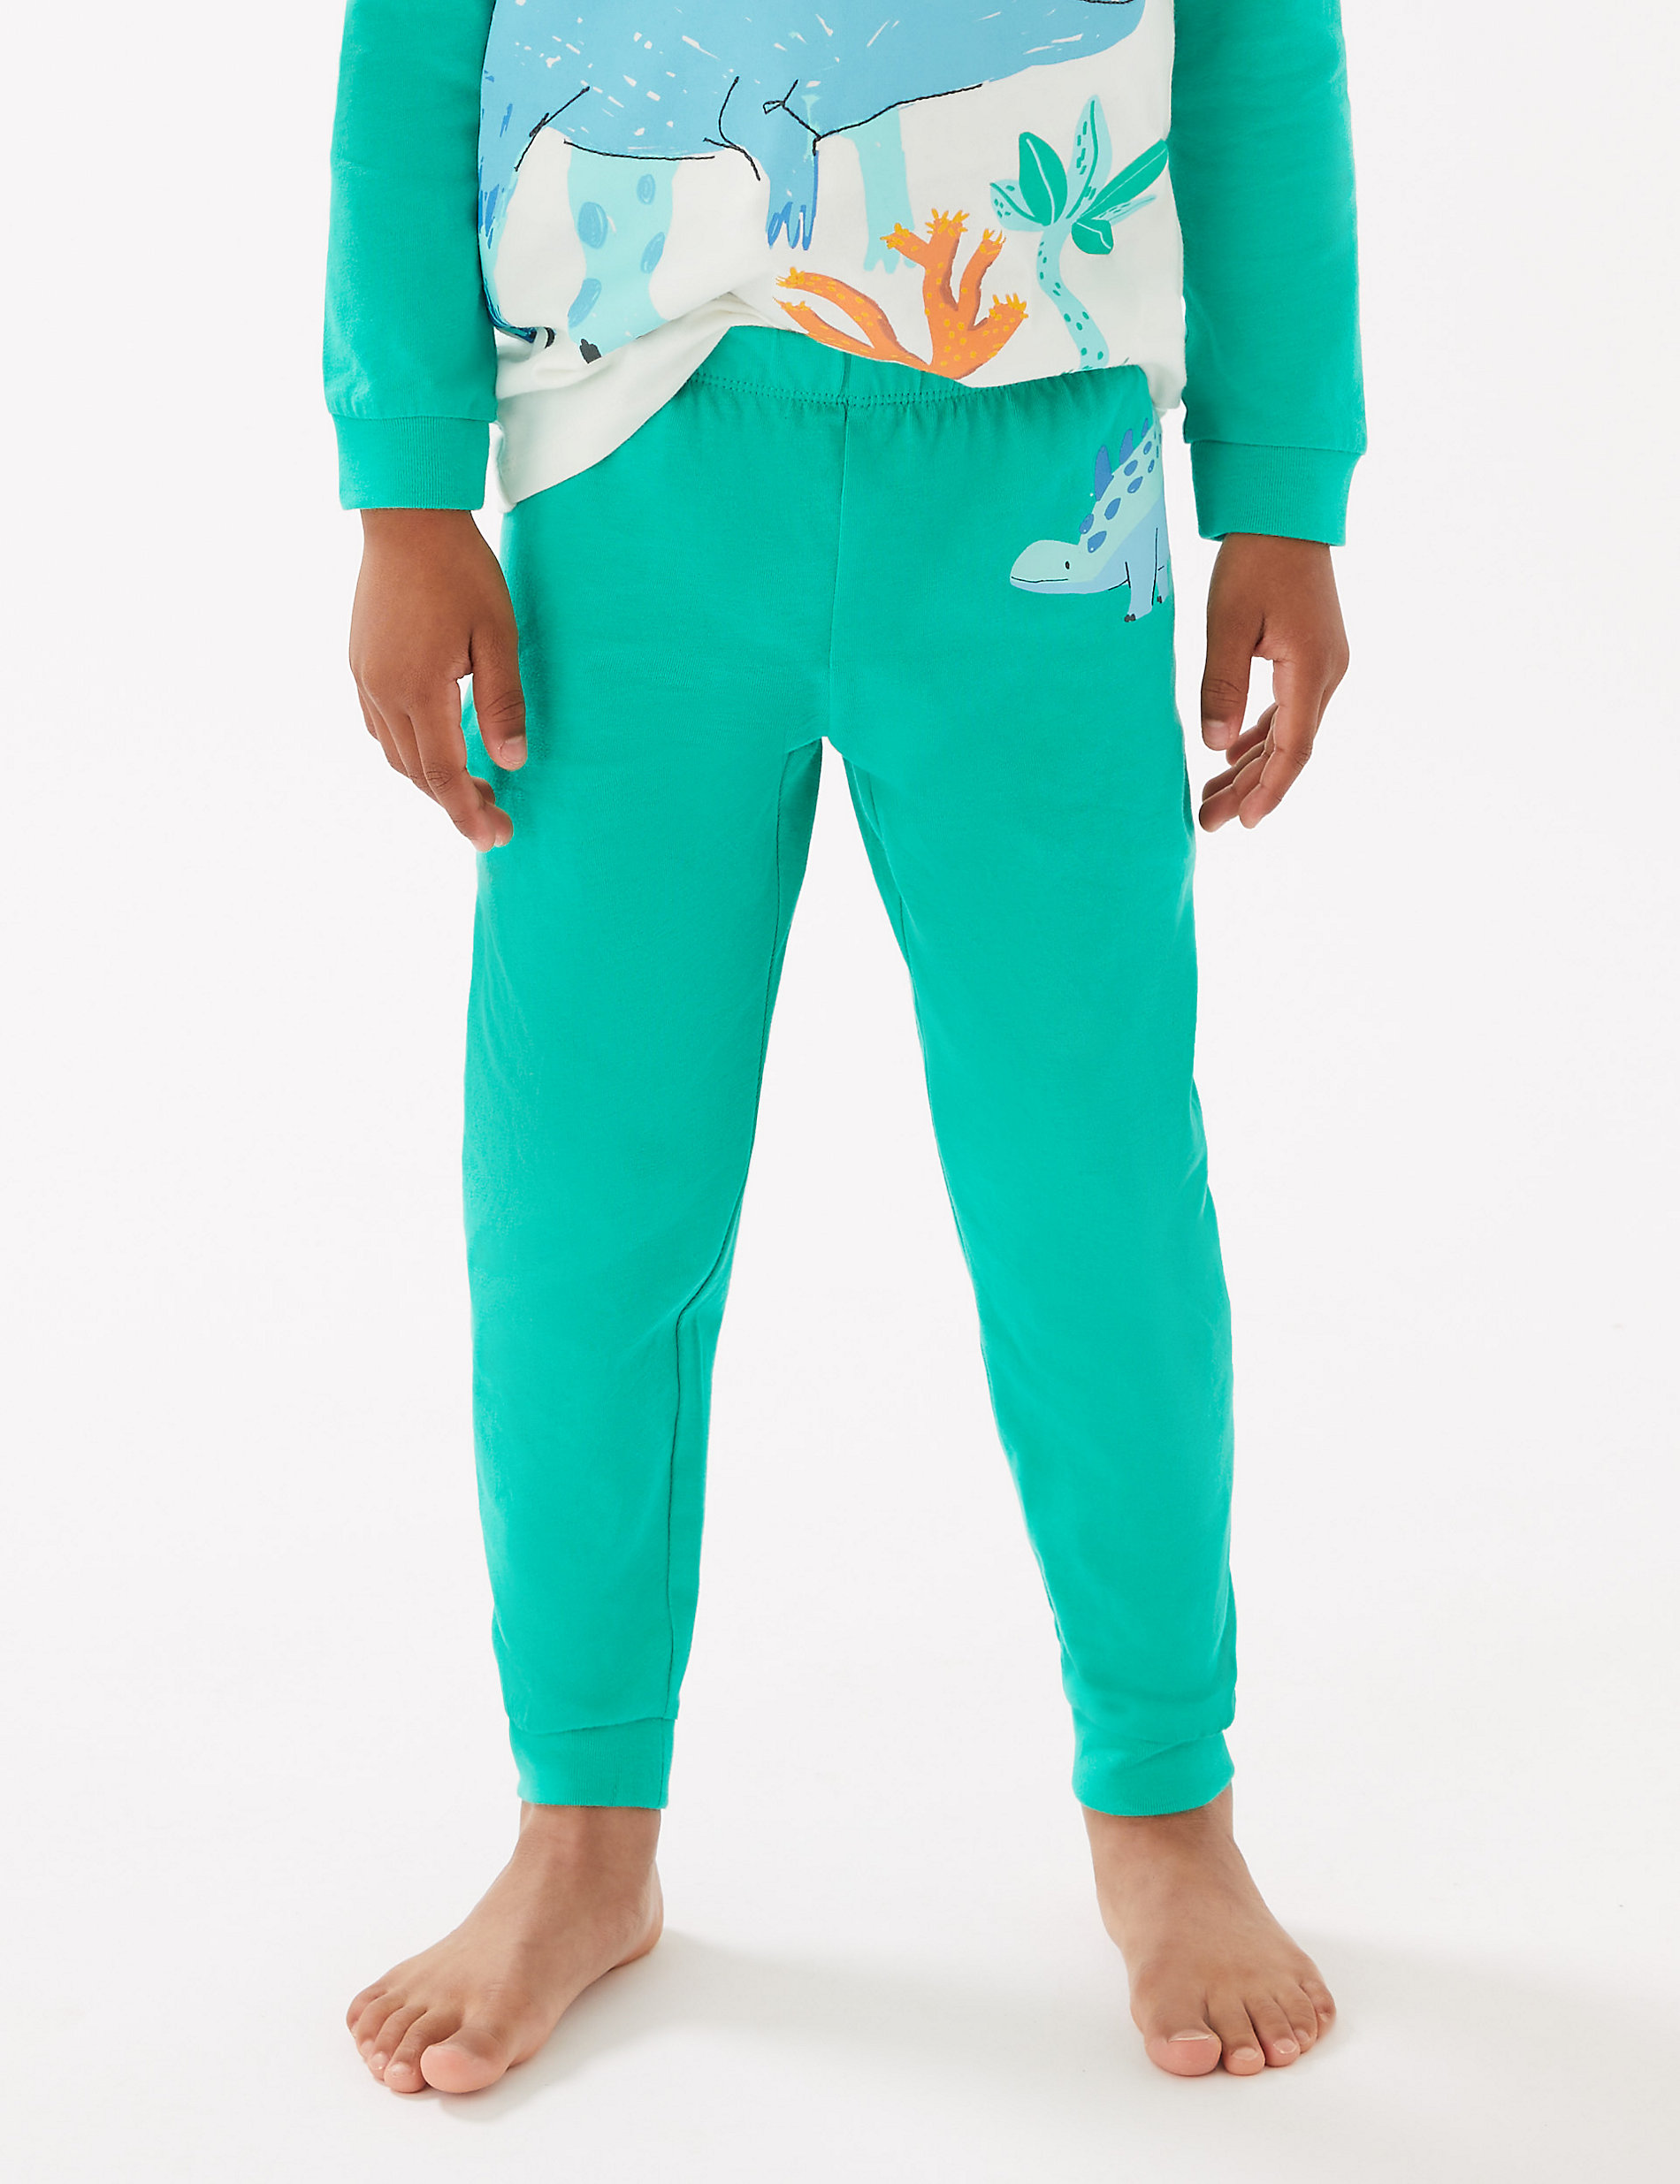 Pack de 2 pijamas 100% algodón con diseño de dinosaurios (1-7&nbsp;años)